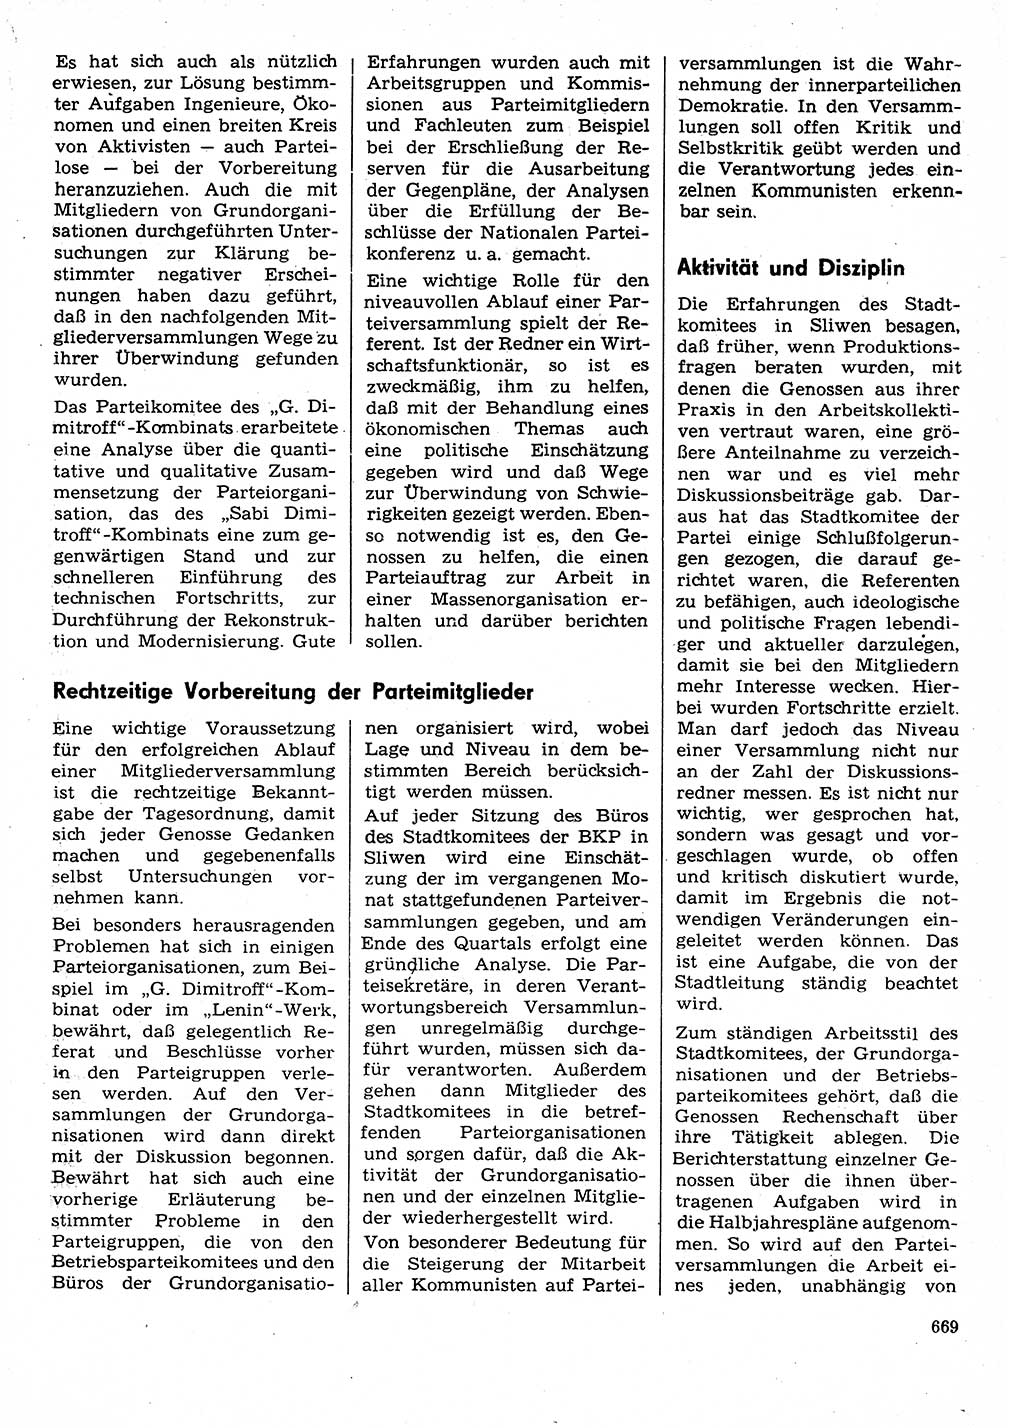 Neuer Weg (NW), Organ des Zentralkomitees (ZK) der SED (Sozialistische Einheitspartei Deutschlands) für Fragen des Parteilebens, 30. Jahrgang [Deutsche Demokratische Republik (DDR)] 1975, Seite 669 (NW ZK SED DDR 1975, S. 669)